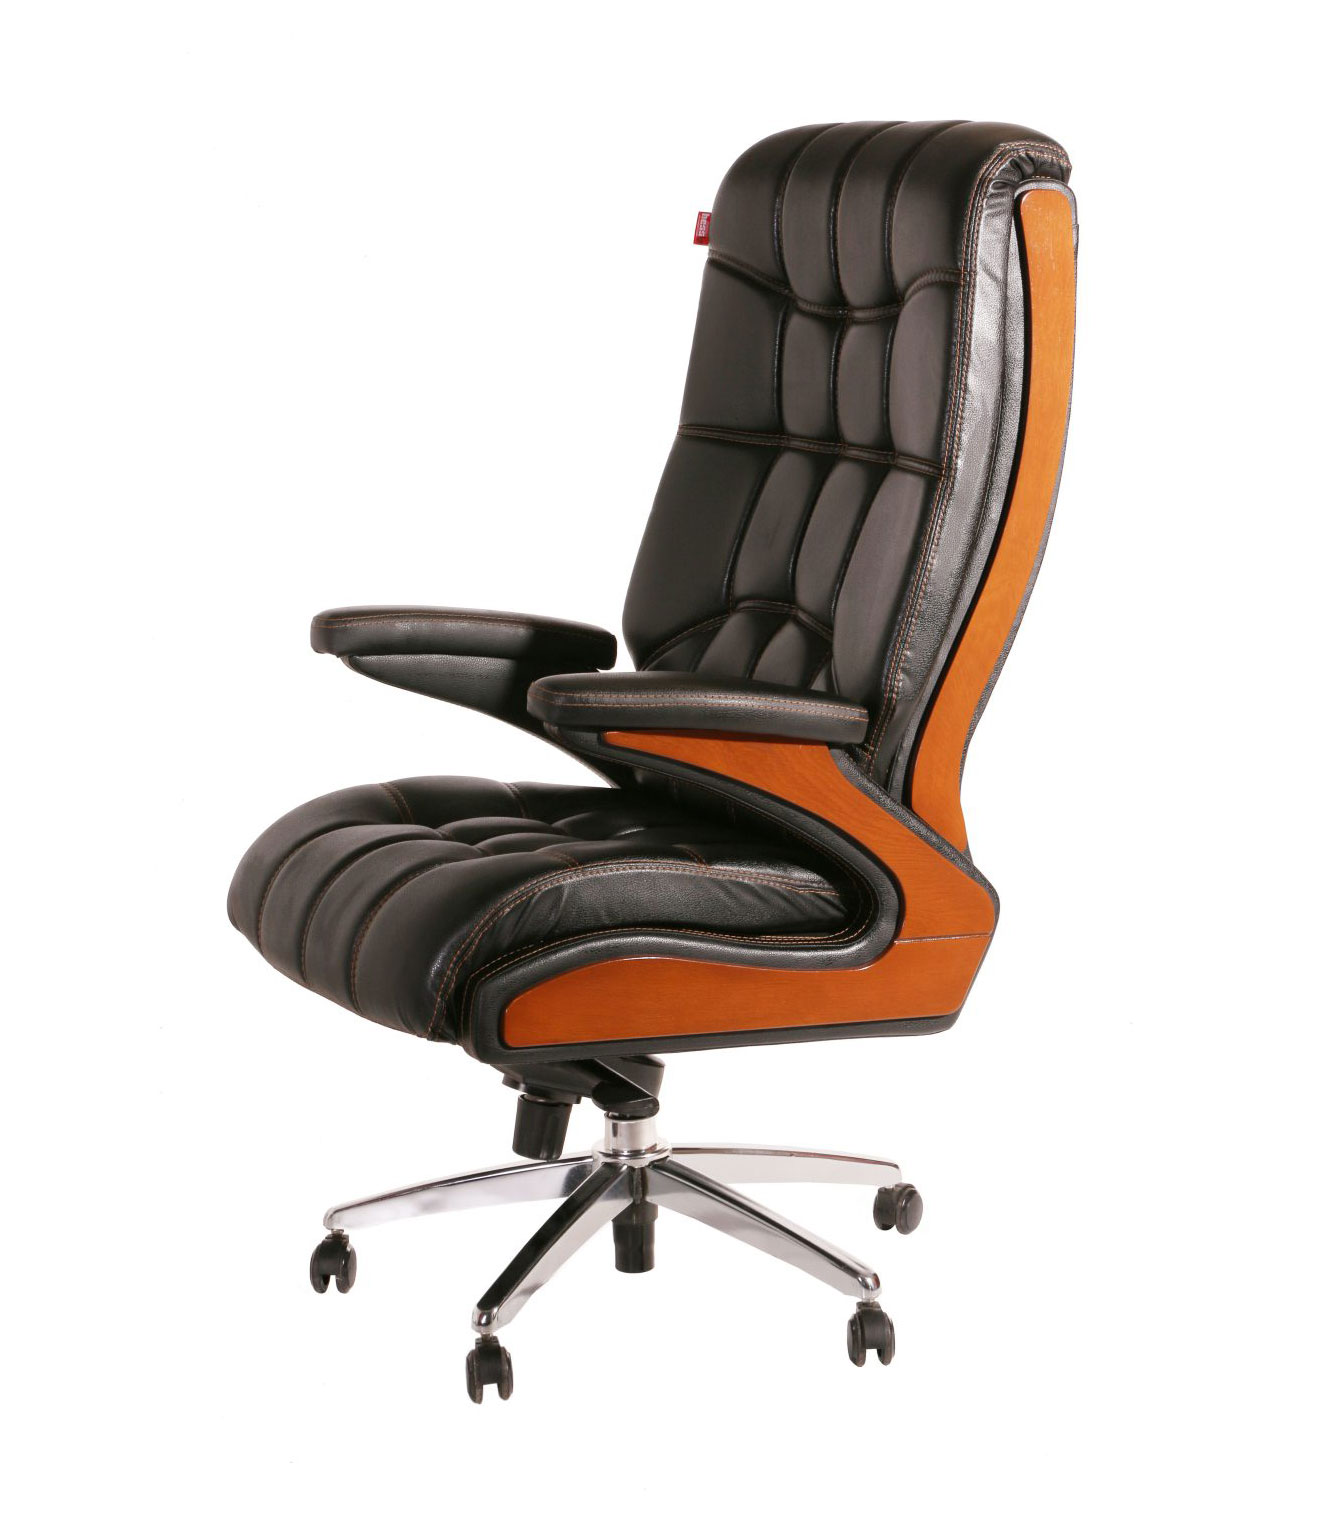 صندلی مدیریتی چوب فروش – مدل M150